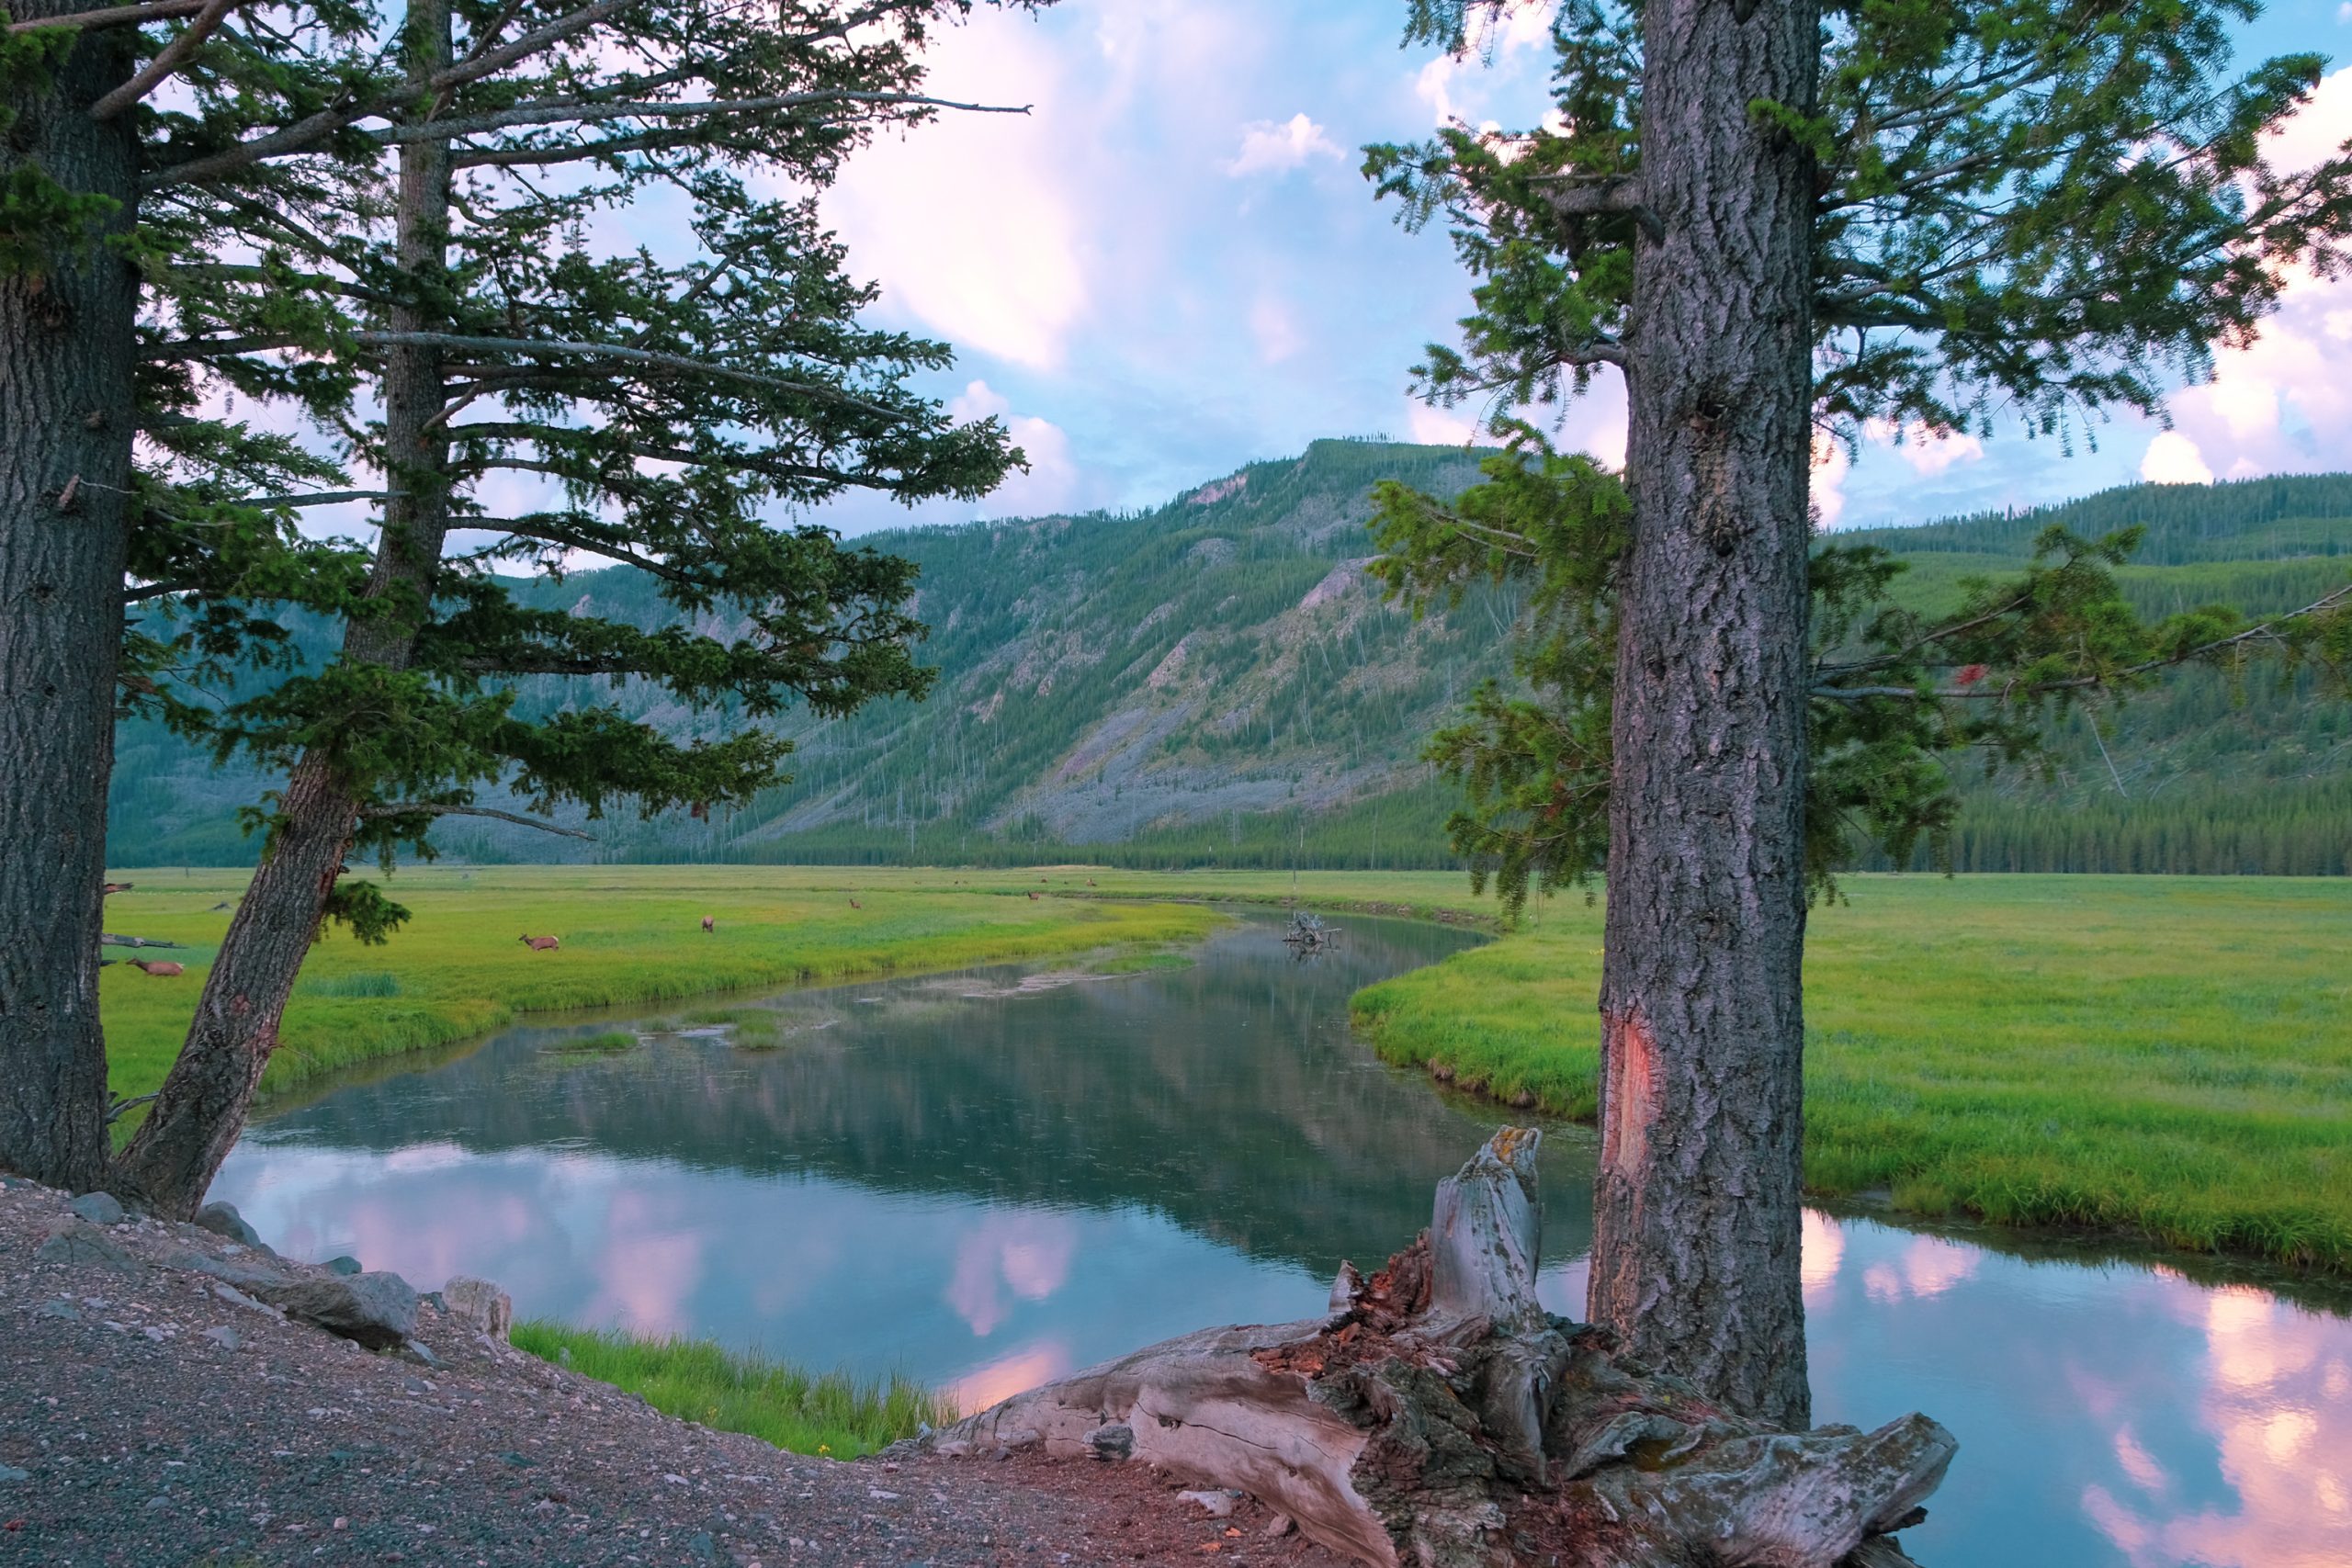 Hirsche und Elche am frühen Morgen in Yellowstone am Madison River